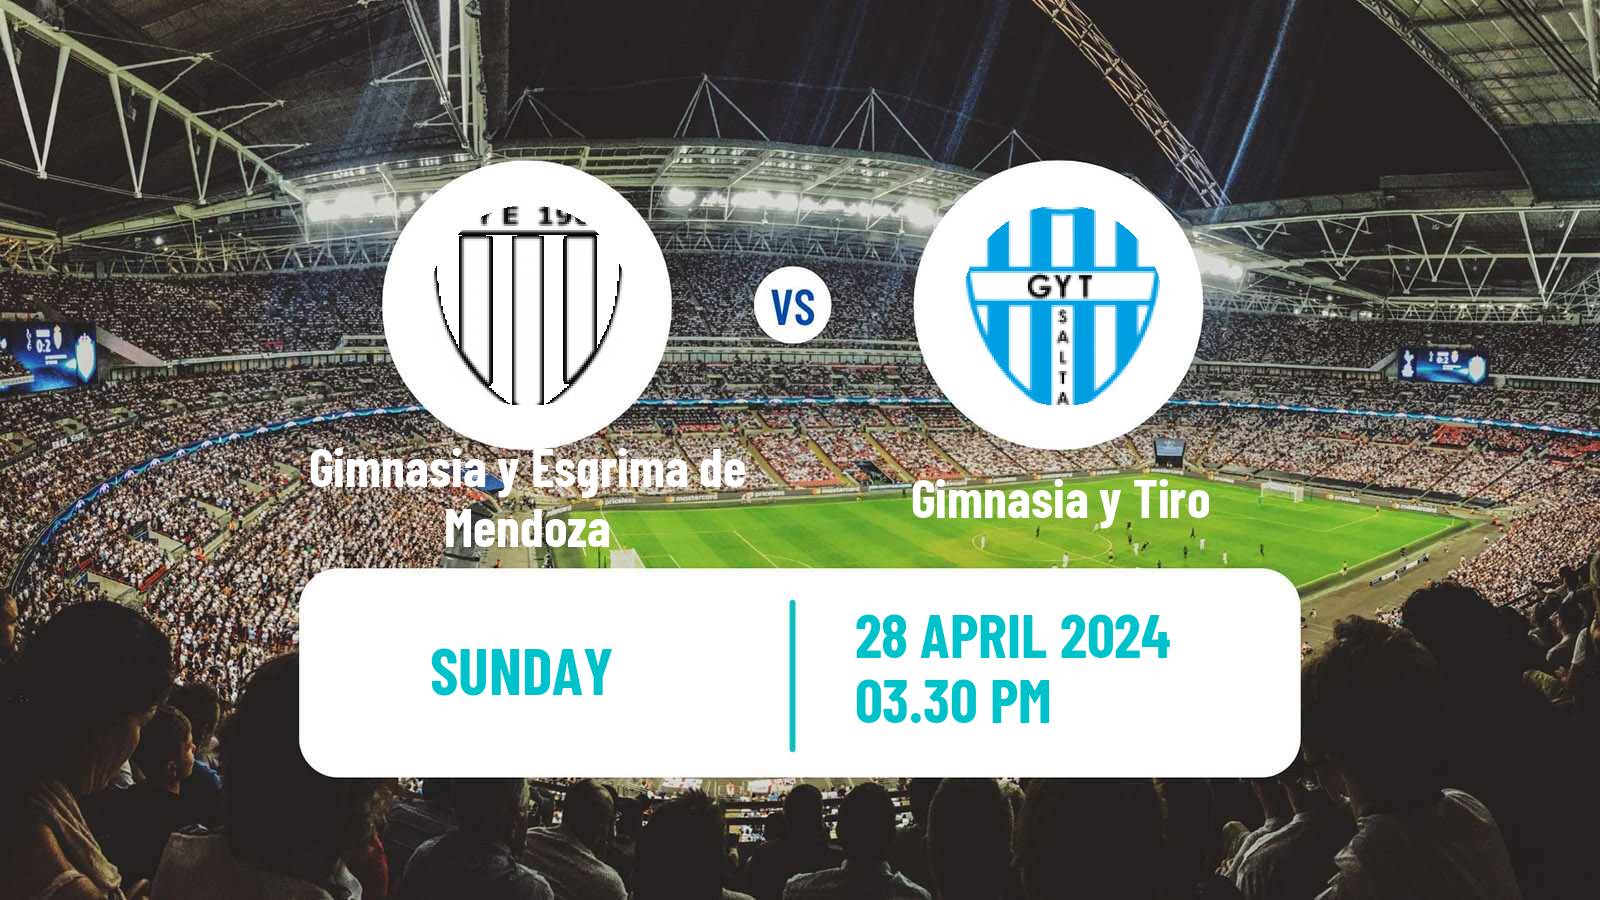 Soccer Argentinian Primera Nacional Gimnasia y Esgrima de Mendoza - Gimnasia y Tiro